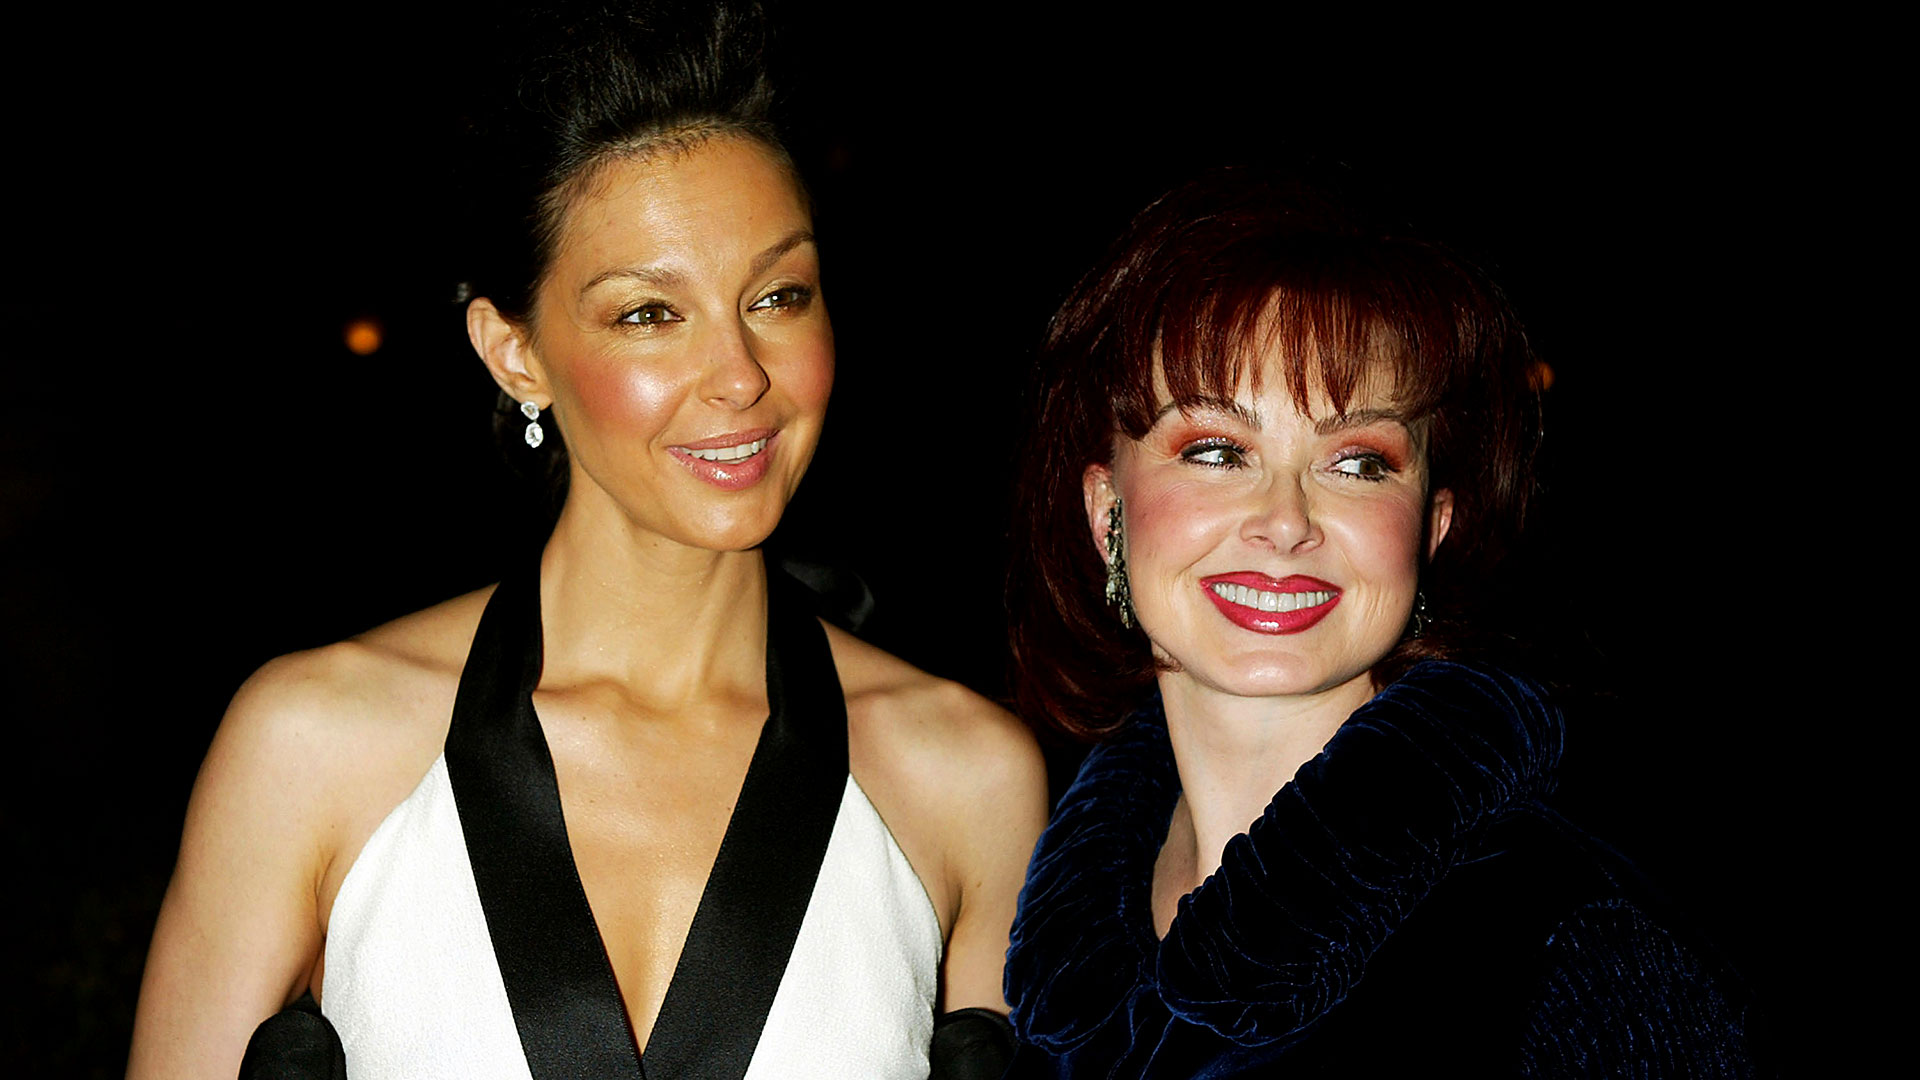 Ashley Judd y su madre Naomi Judd en la premiere de "Twisted" en 2004 (Getty Images)